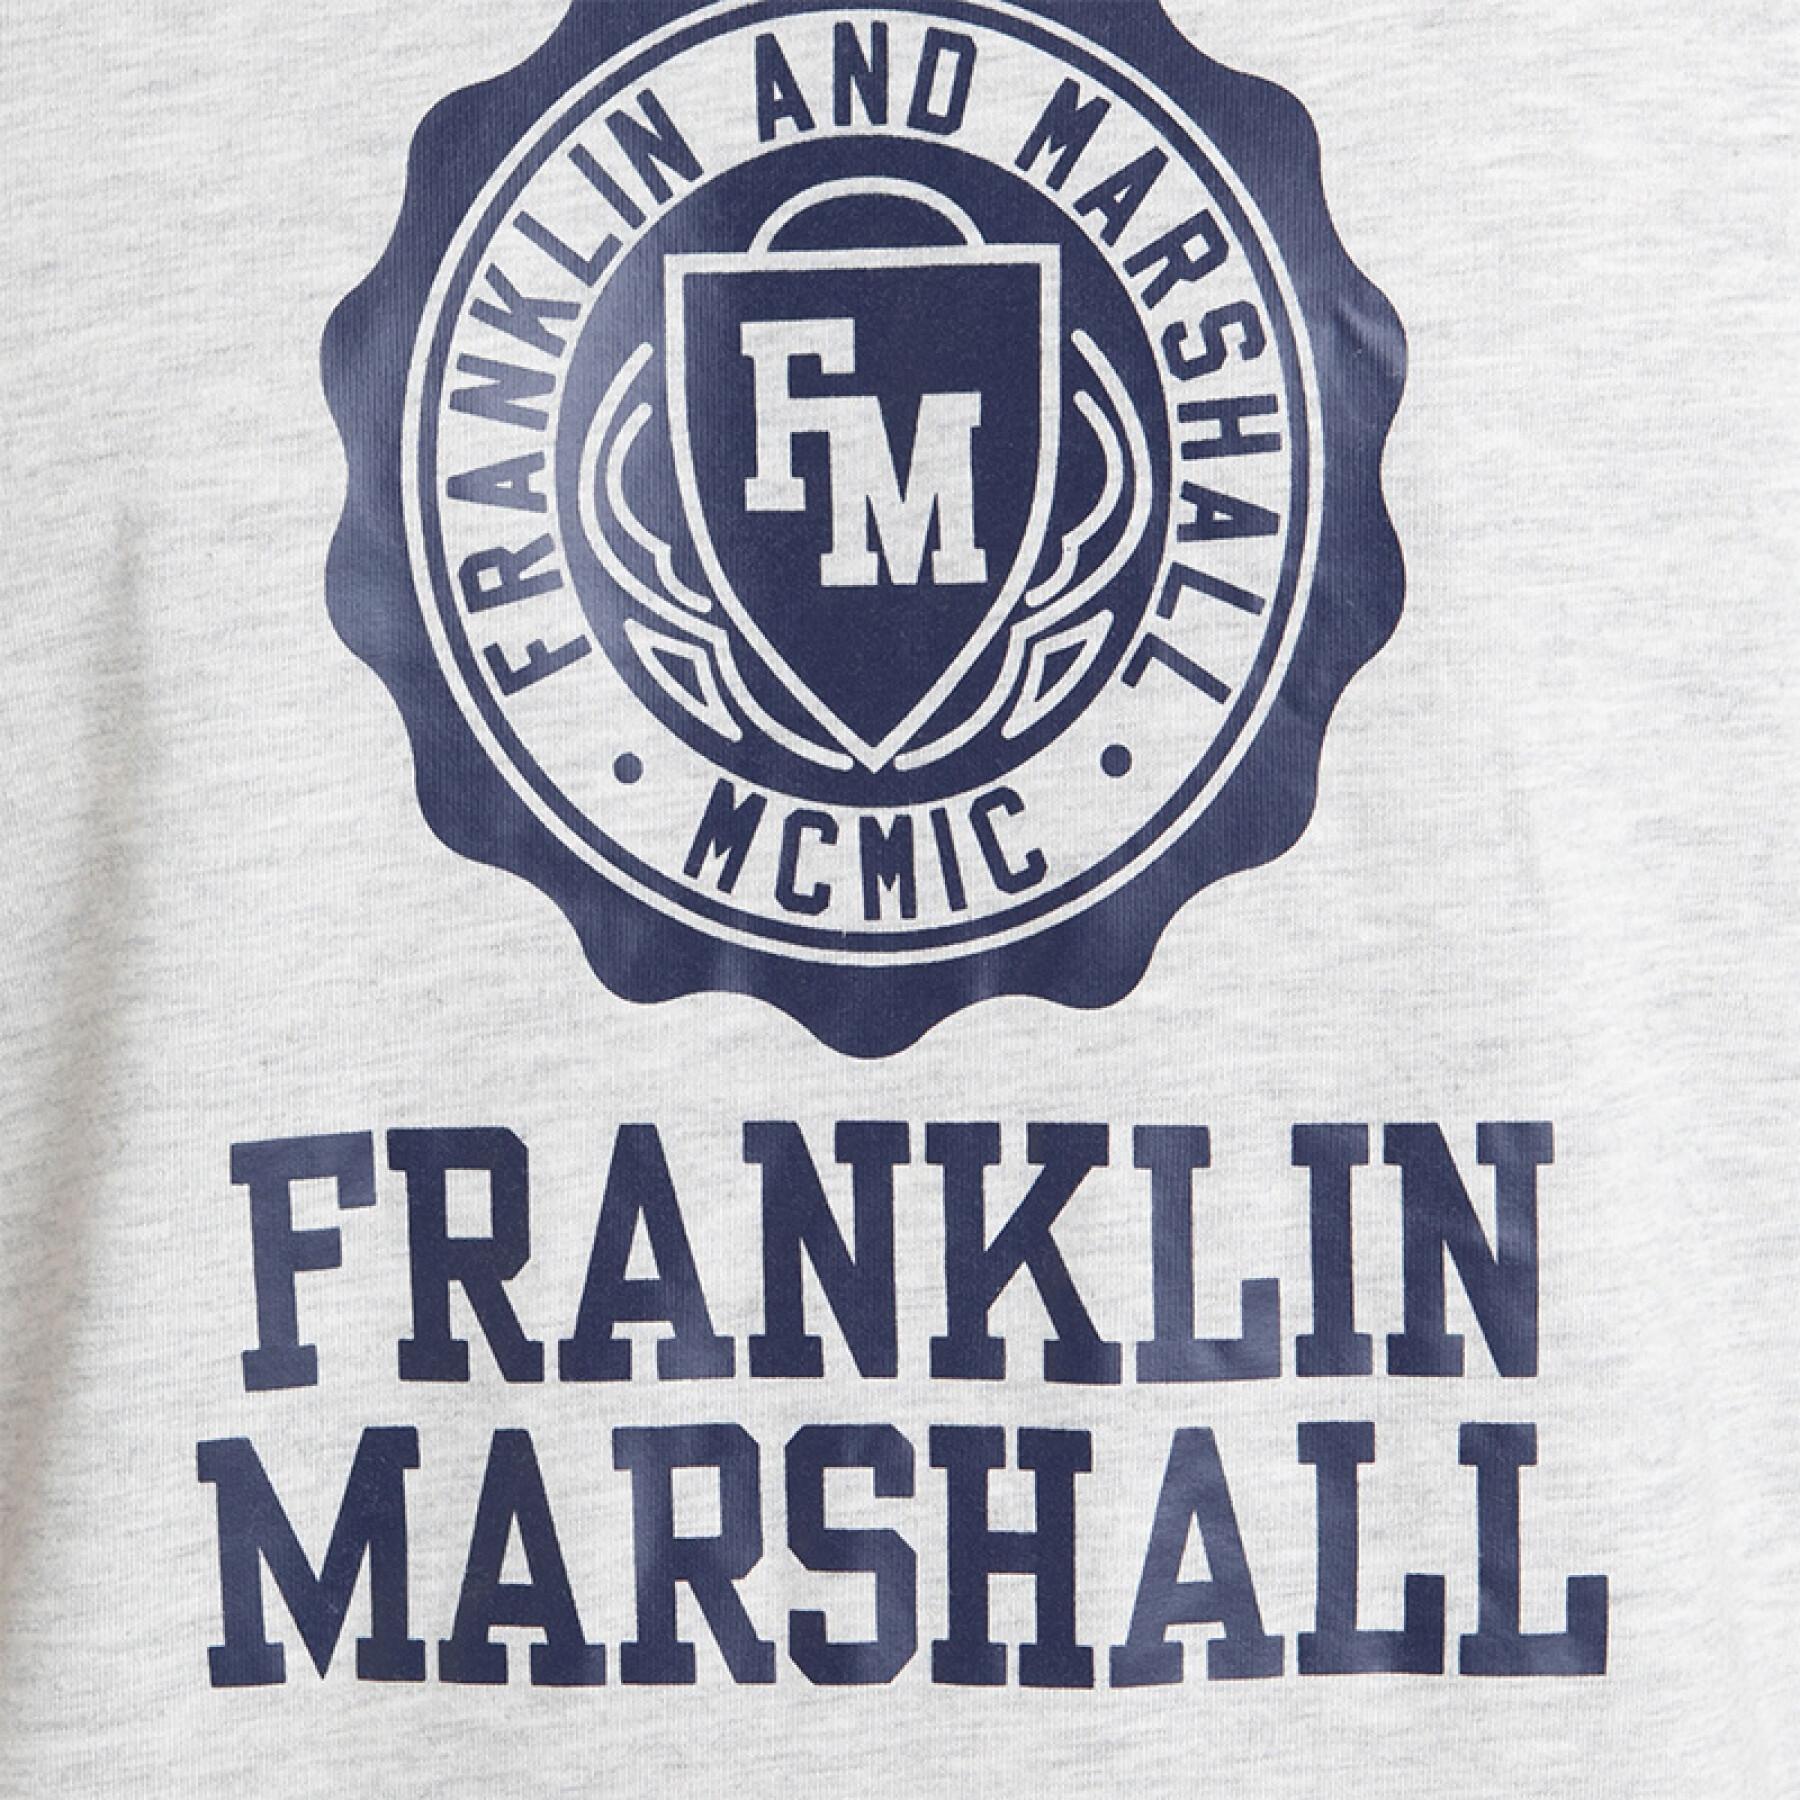 Maglietta Franklin & Marshall Classic